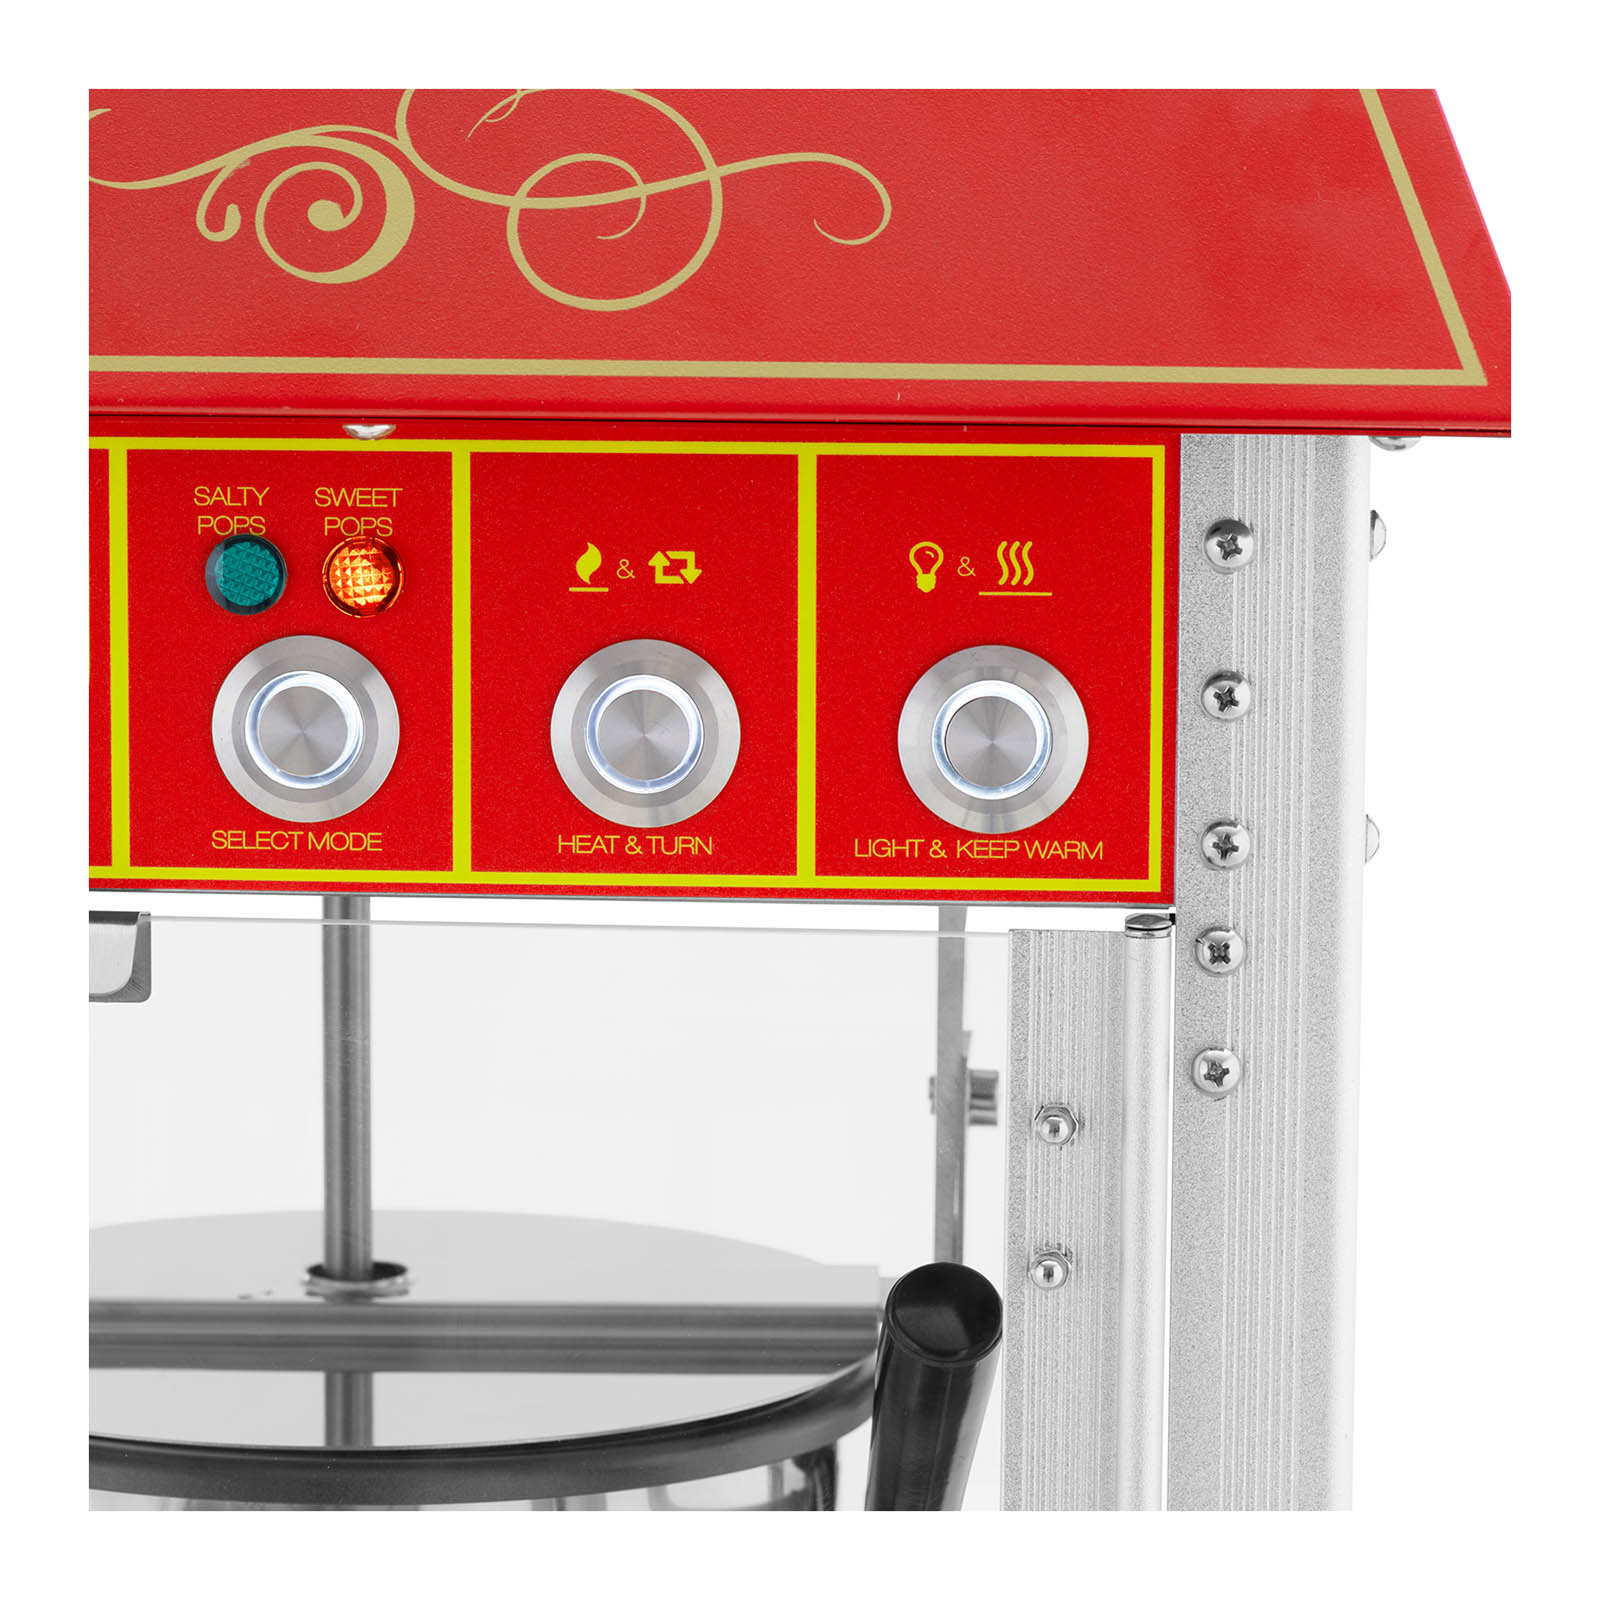 Maszyna do popcornu z wózkiem - design retro - 150/180°C - czerwona - Royal Catering